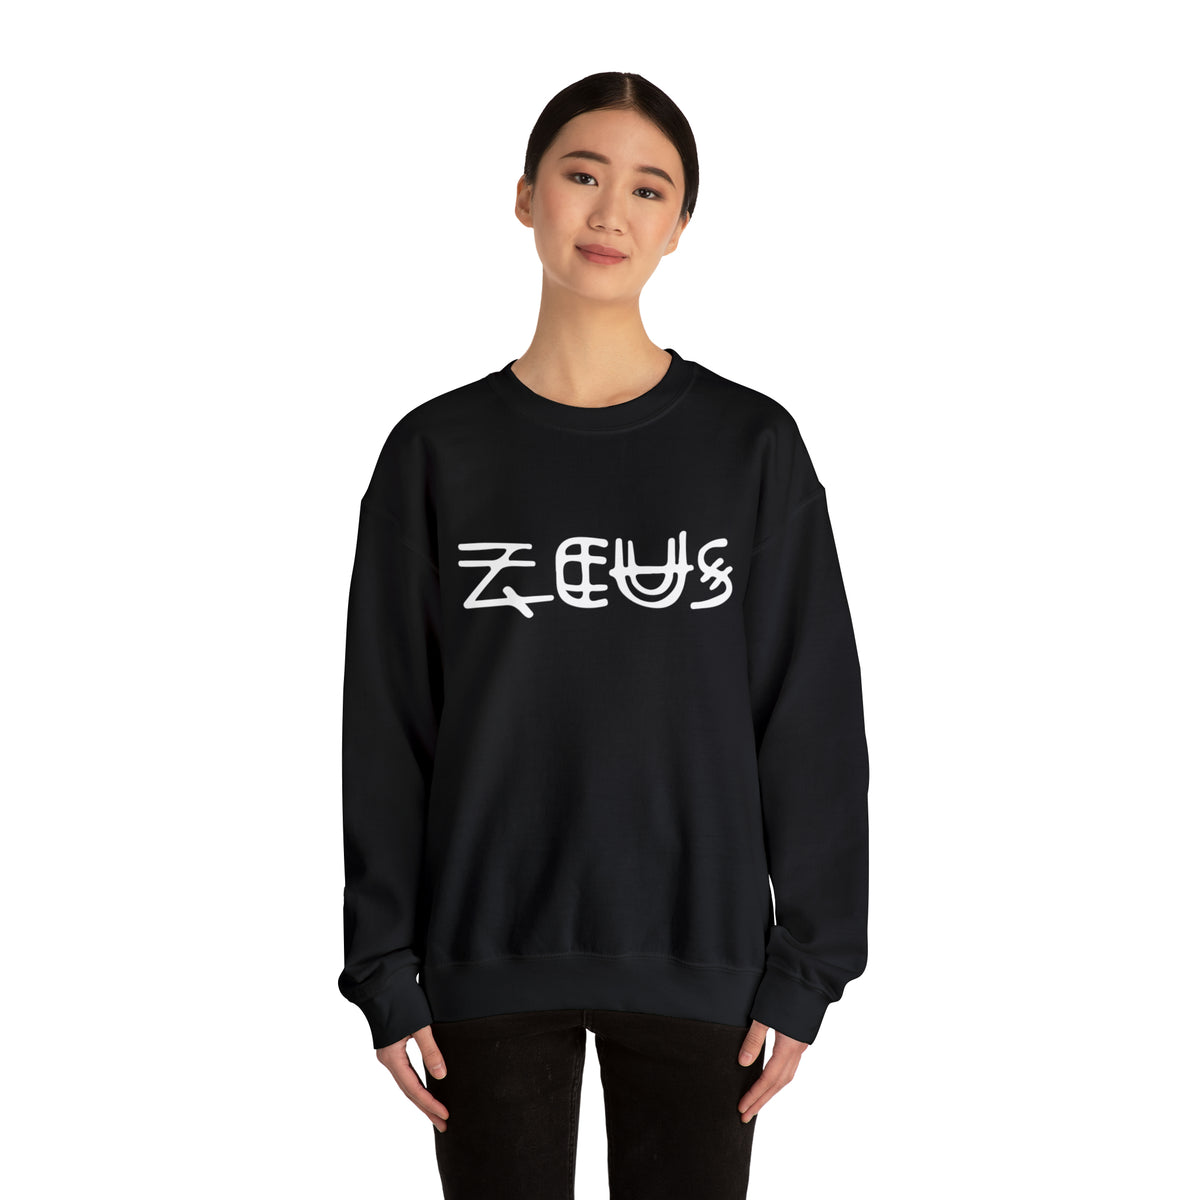 Zeus Unisex Sweatshirt